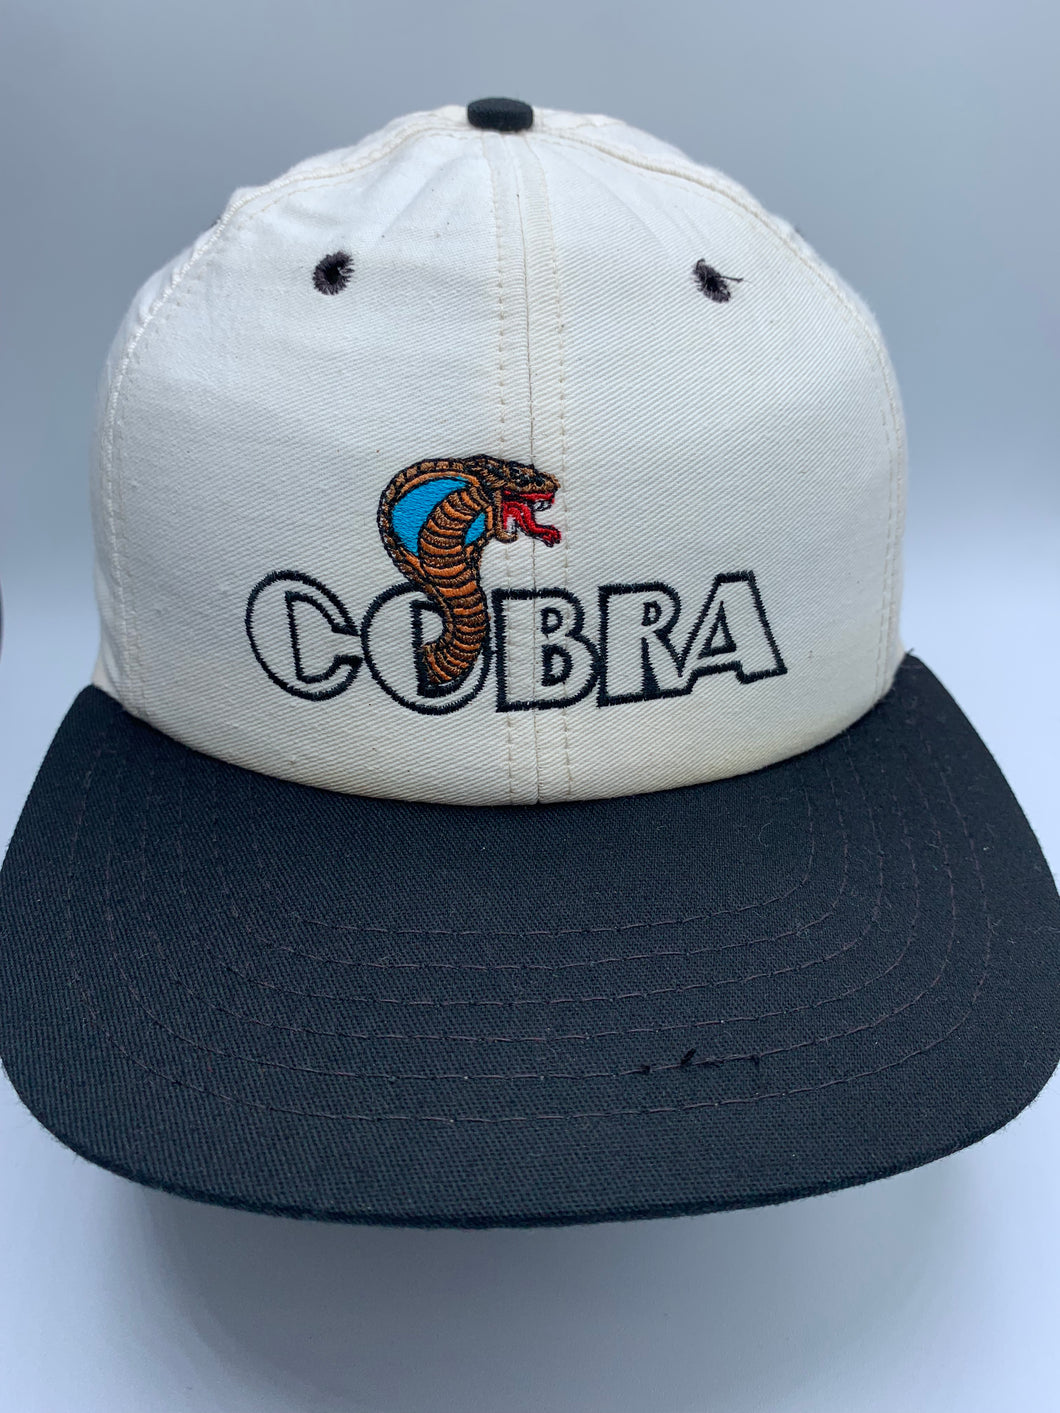 Vintage Ford Cobra Snapback Hat